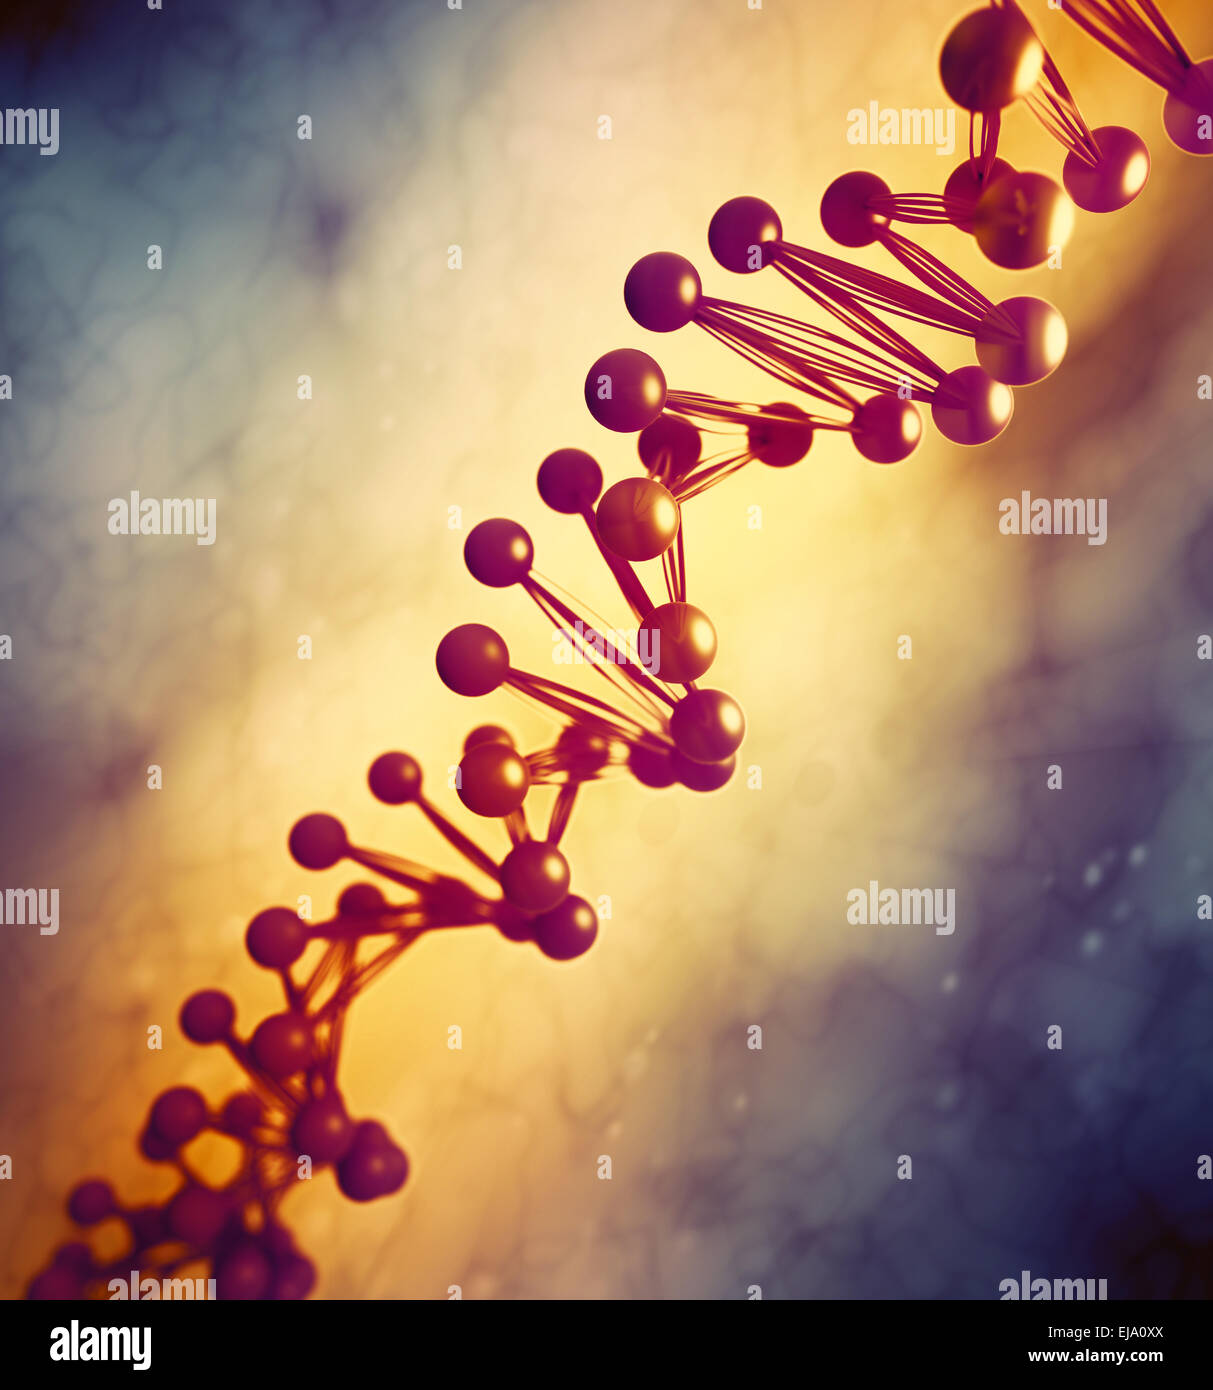 Modèle génétique d'ADN - illustration Banque D'Images